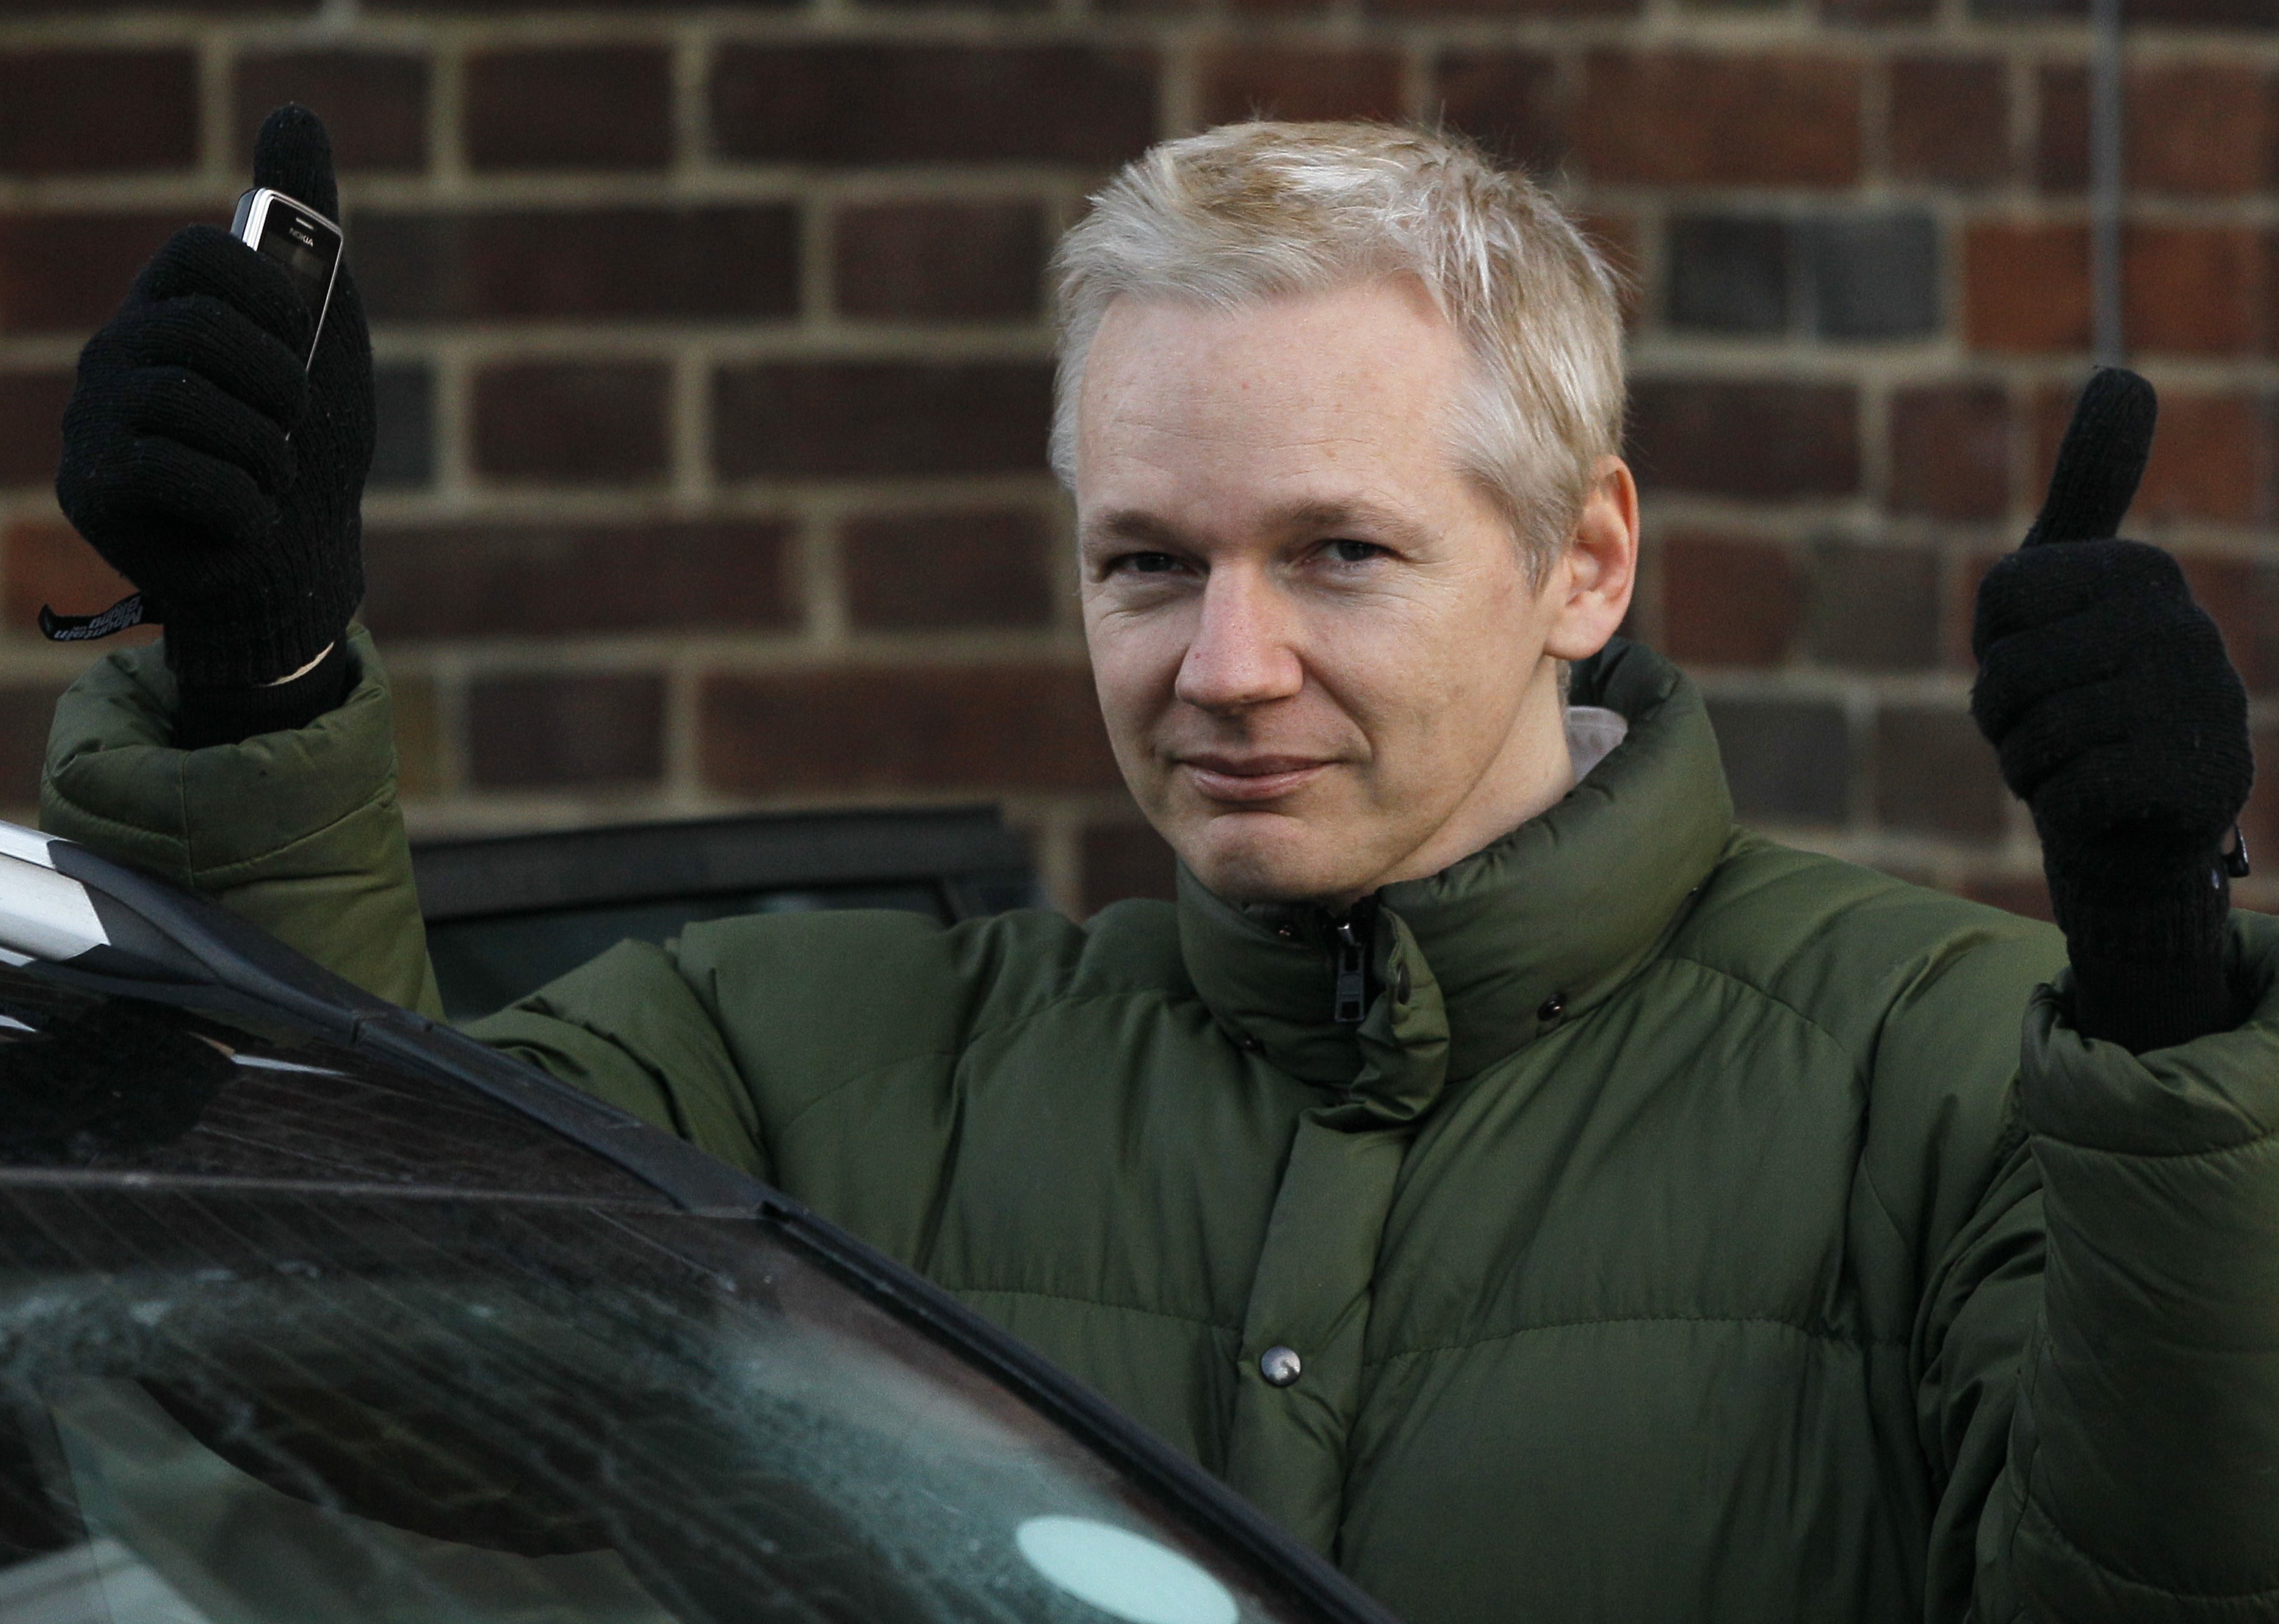 Onsdagen den 30 maj 2012 kom beskedet. Julian Assange utlämnas till Sverige.